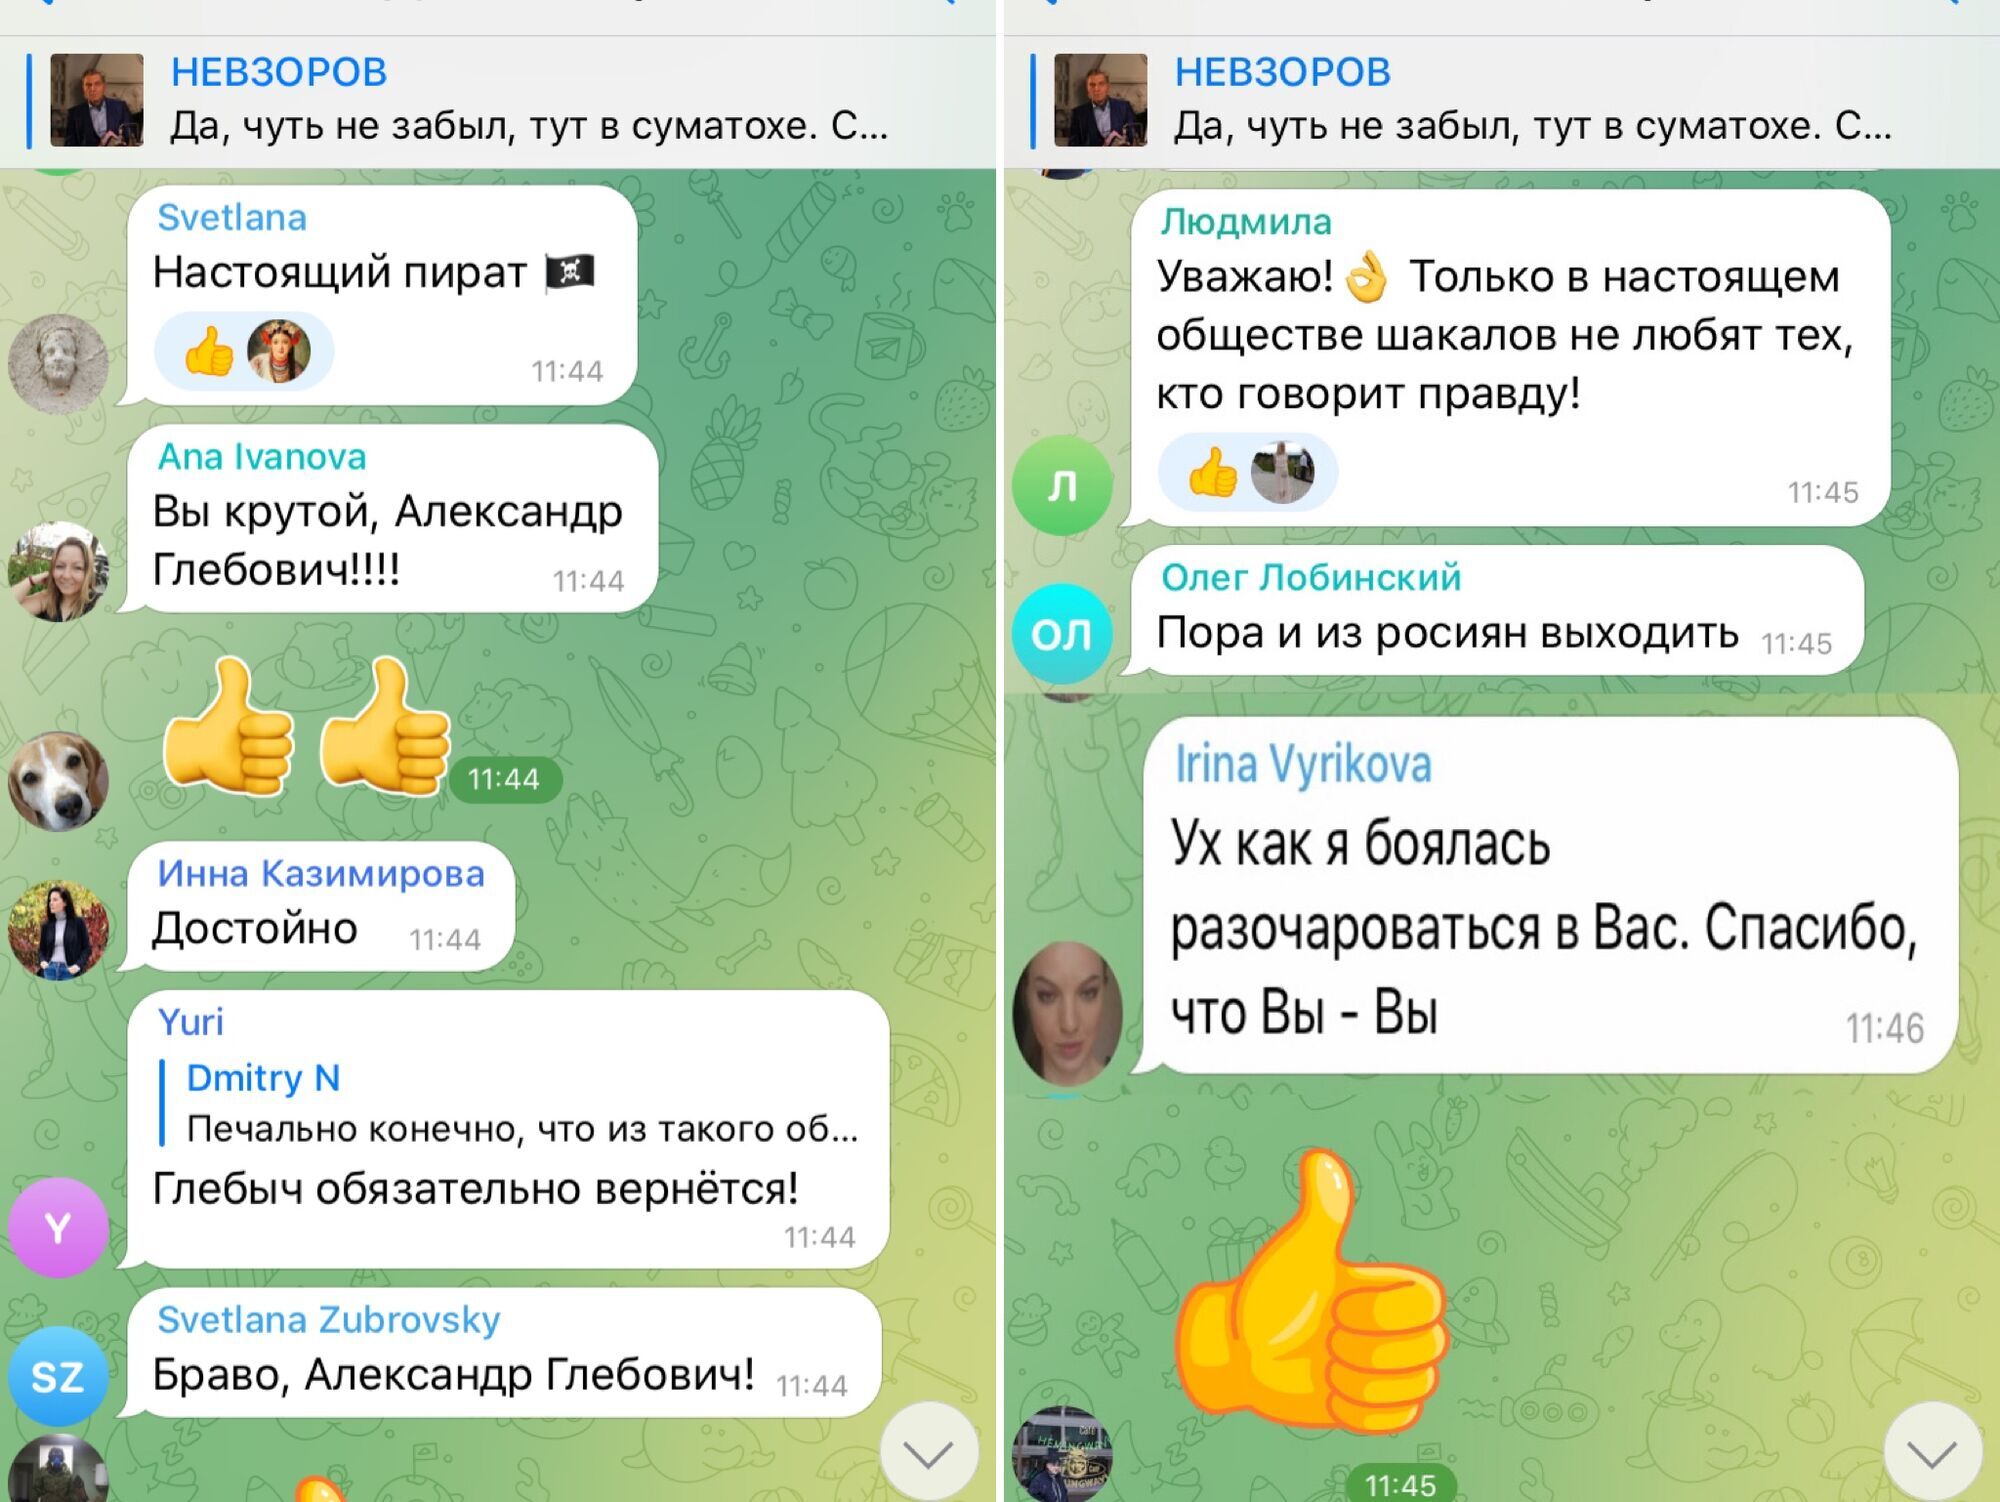 Комментарии под публикацией Невзорова